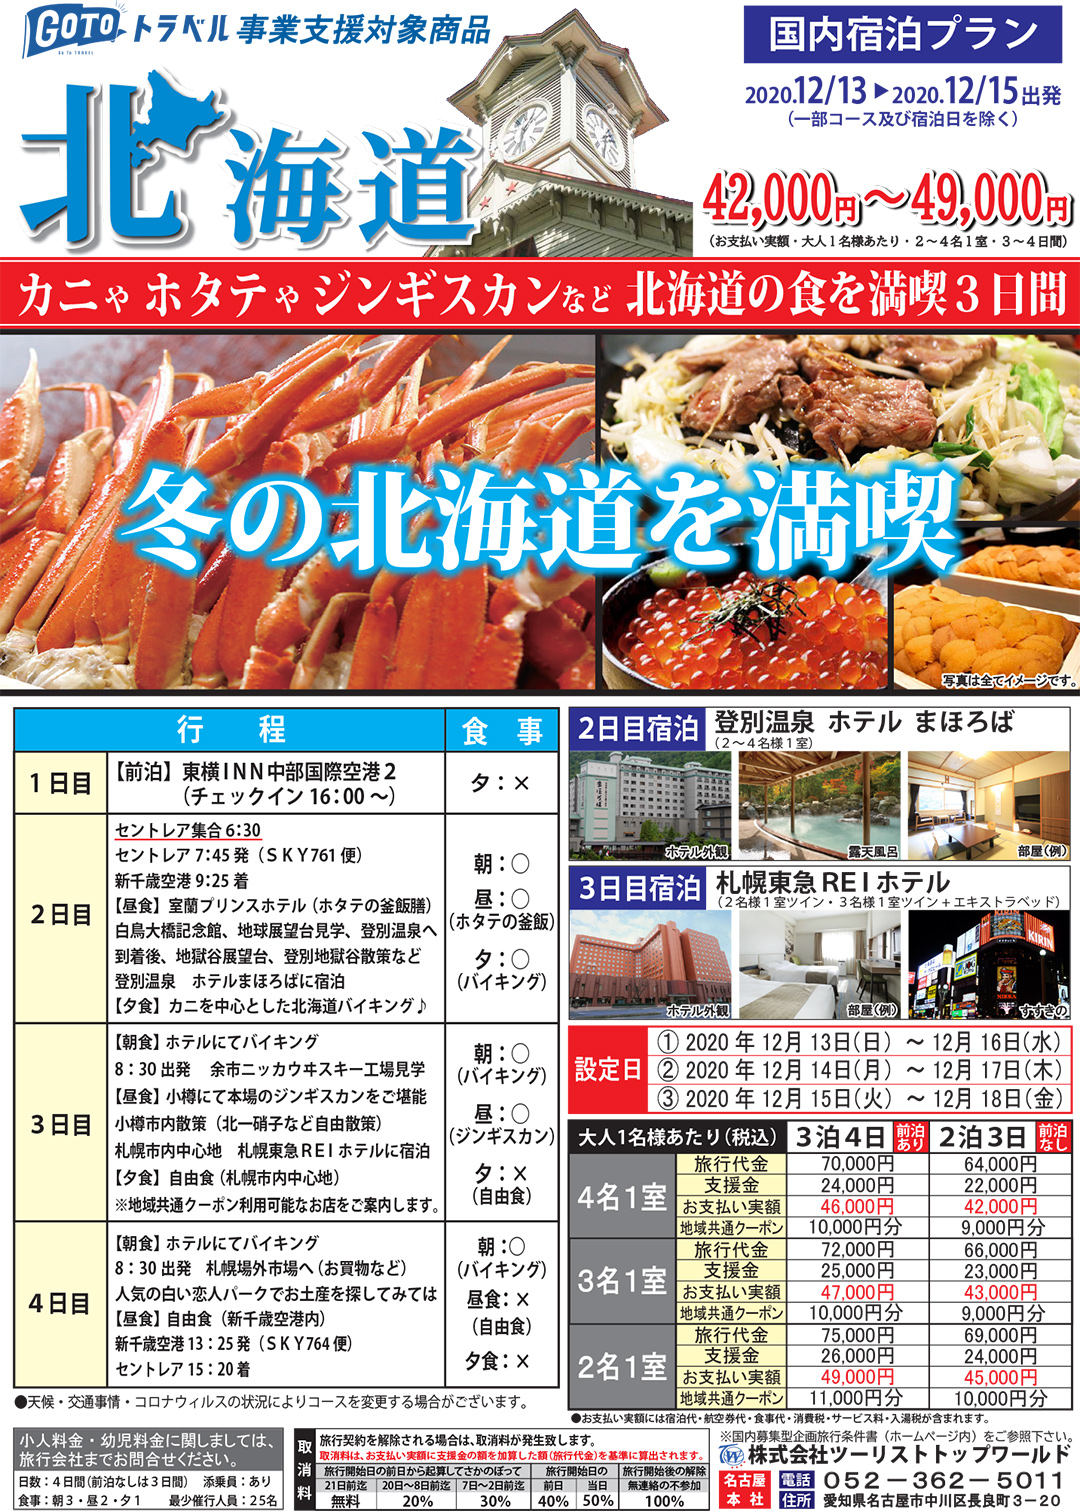 北海道の食を満喫 3日間プラン